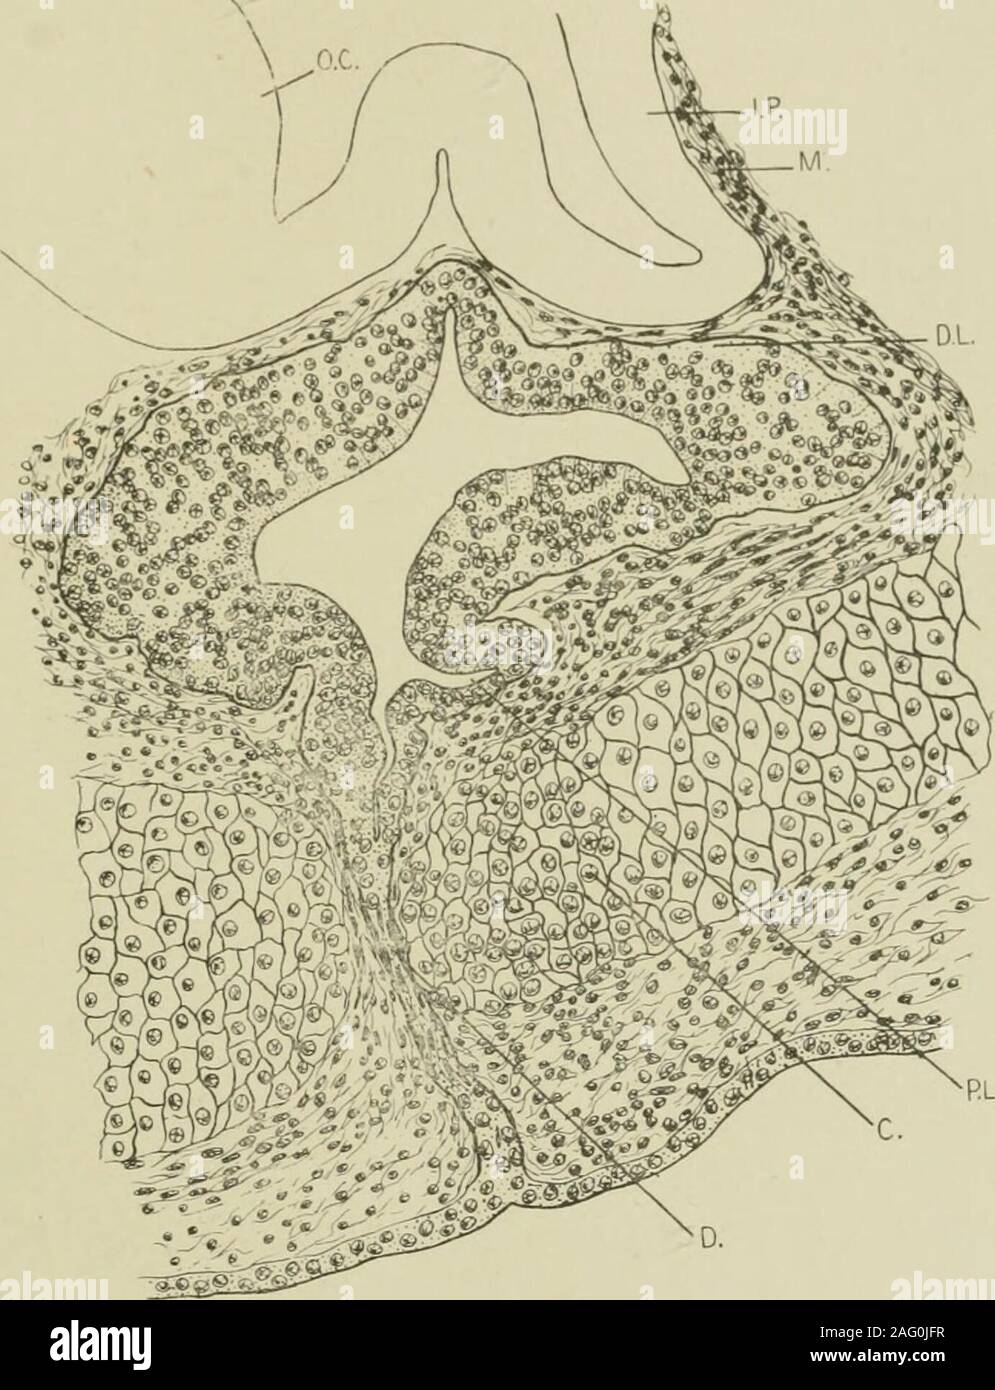 . Amtsblatt der Anatomie. ^, wird dann vergrößert in der dorso-ventraldirection (Abb. 18, a). Hintere Kopfeinheit auf den Überrest des Kanals, es war twolarge dorso-Seitliche hohlen Hautanhangsgebilde (Abb. 18 c, L. D.L.), deren cavitiesopen in das Lumen. Die distalen Lappen ist noch Bifidum kaudal und theinfundibular Prozess, der eine kurze, konische Struktur, zwischen denbeiden Hälften passt. Die Wände zeigen keine Veränderung seit der vorhergehenden Stufe. Bis zu diesem Zeitpunkt die intimsten Beziehungen zwischen der diencephalicfloor und die bukkale Tasche gepflegt wurden, aber in der longitudinalseries dieser Phase gibt es eine Stockfoto